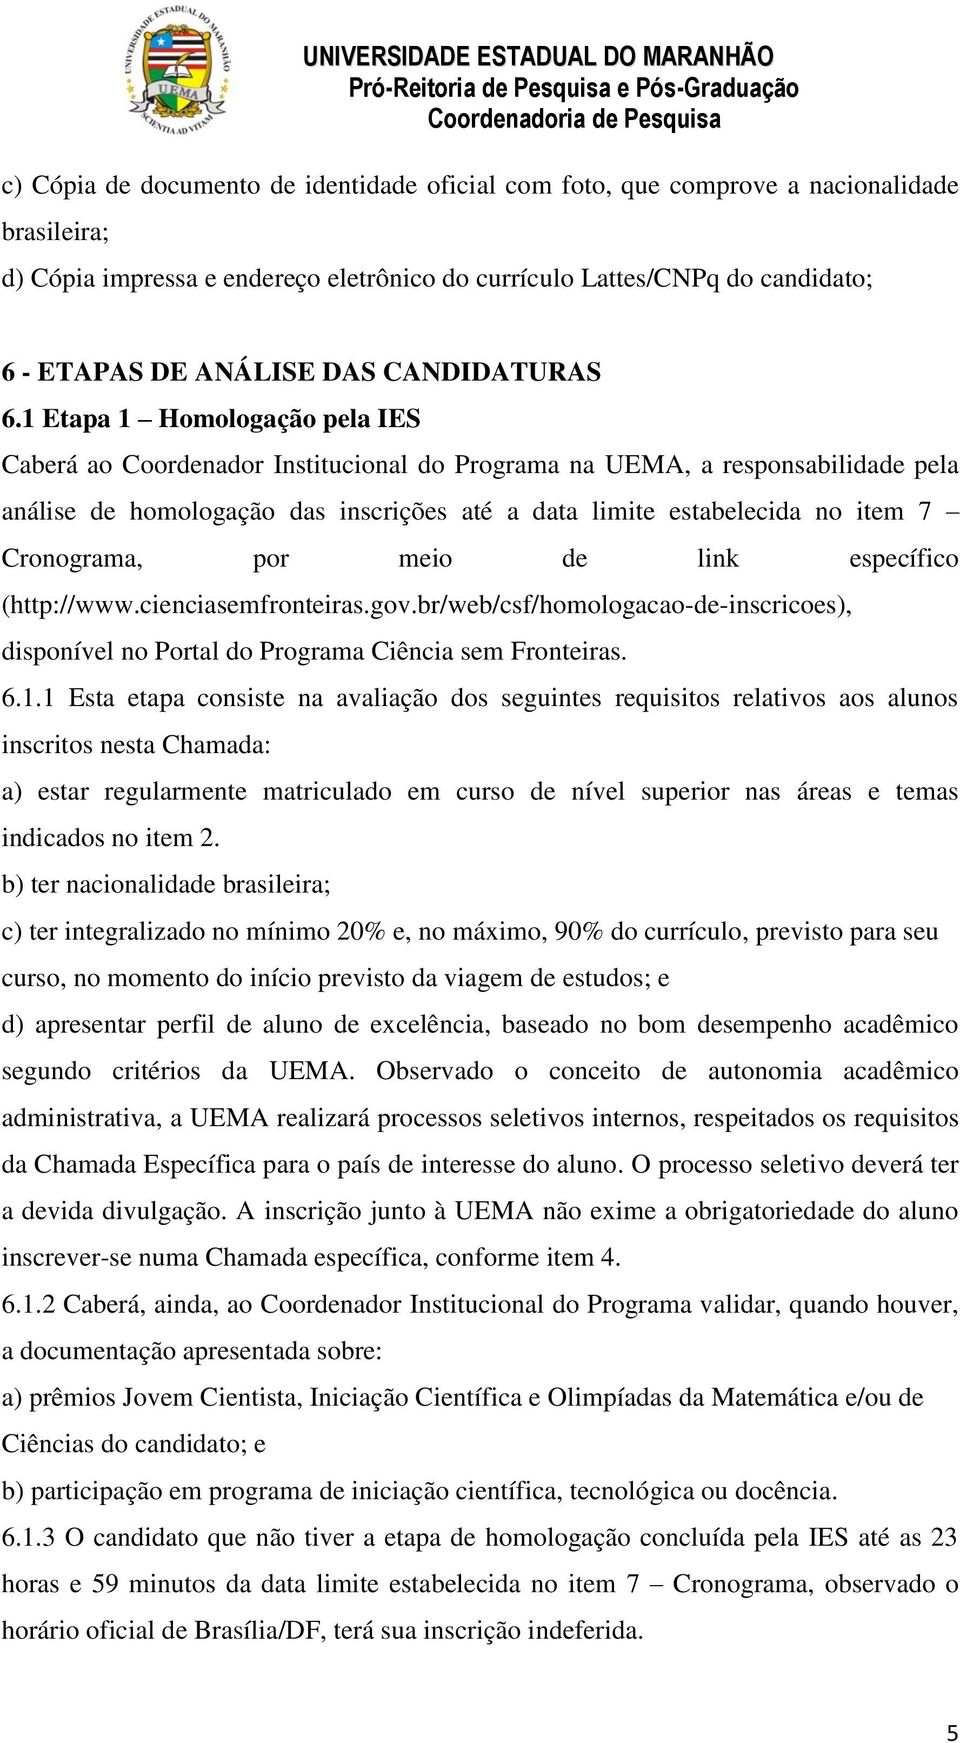 1 Etapa 1 Homologação pela IES Caberá ao Coordenador Institucional do Programa na UEMA, a responsabilidade pela análise de homologação das inscrições até a data limite estabelecida no item 7